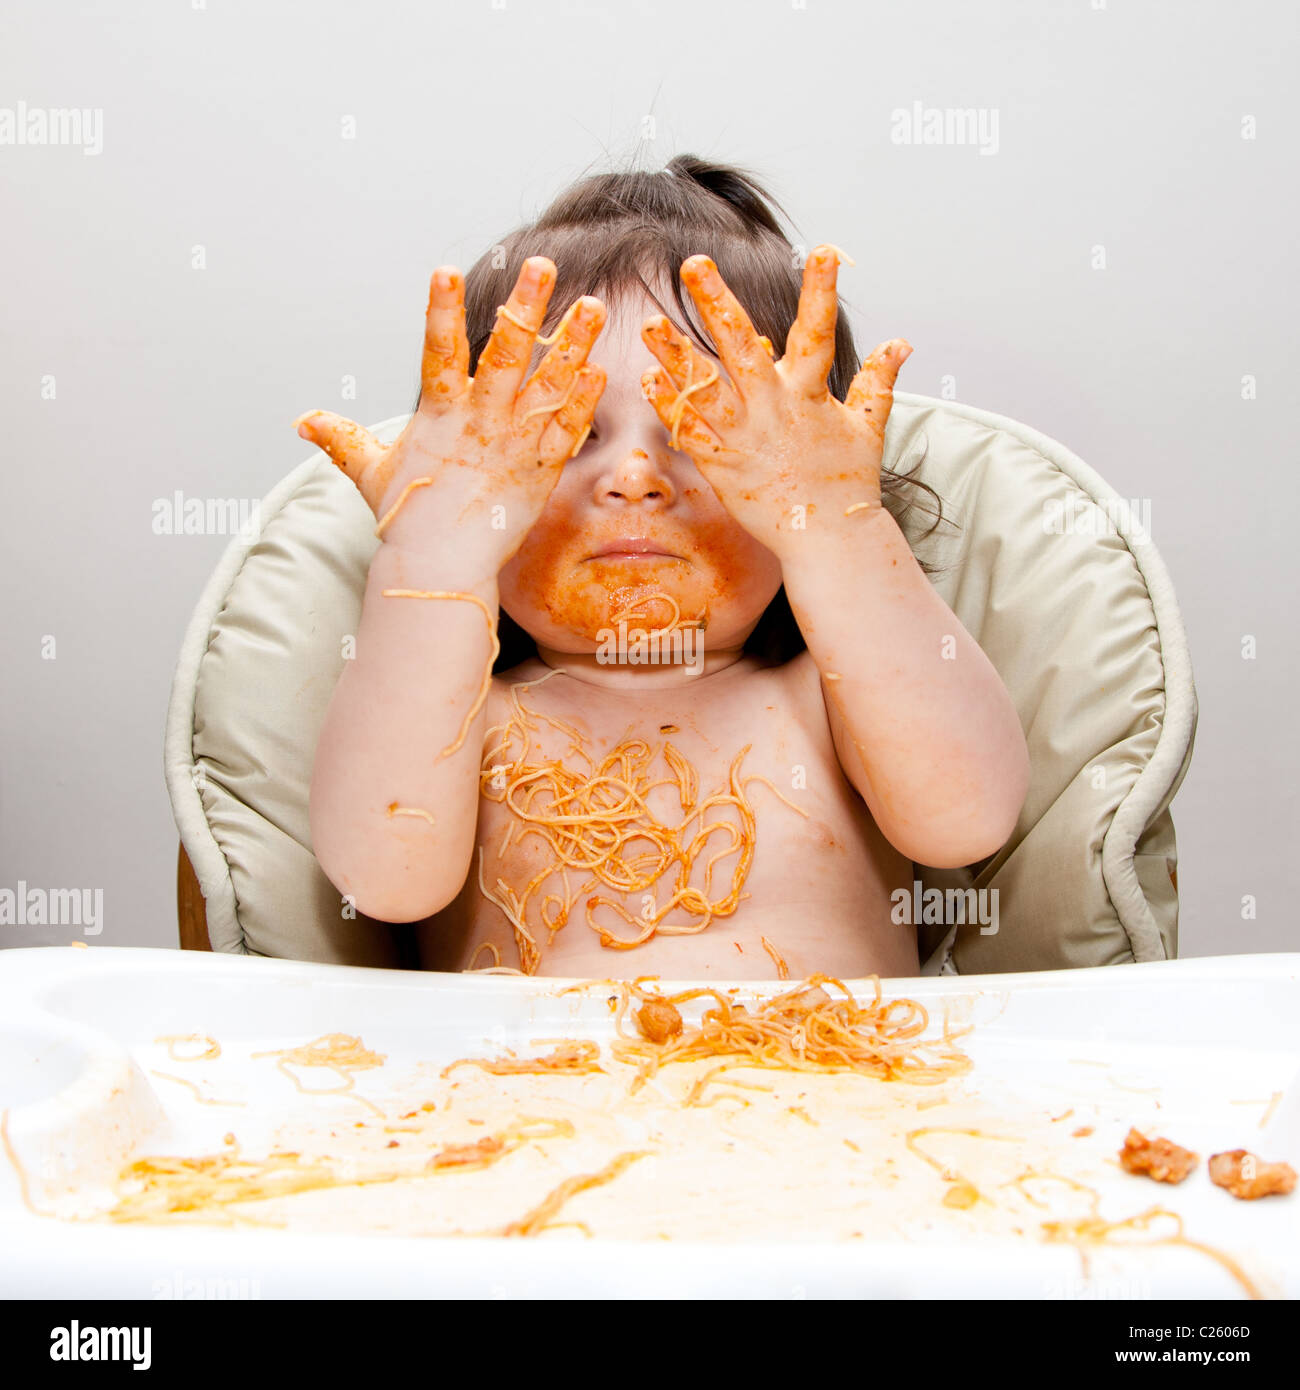 Glückliches Baby Spaß Essen chaotisch zeigt Hände in Angel Hair Pasta Spaghetti rot marinara Tomatensauce bedeckt. Stockfoto